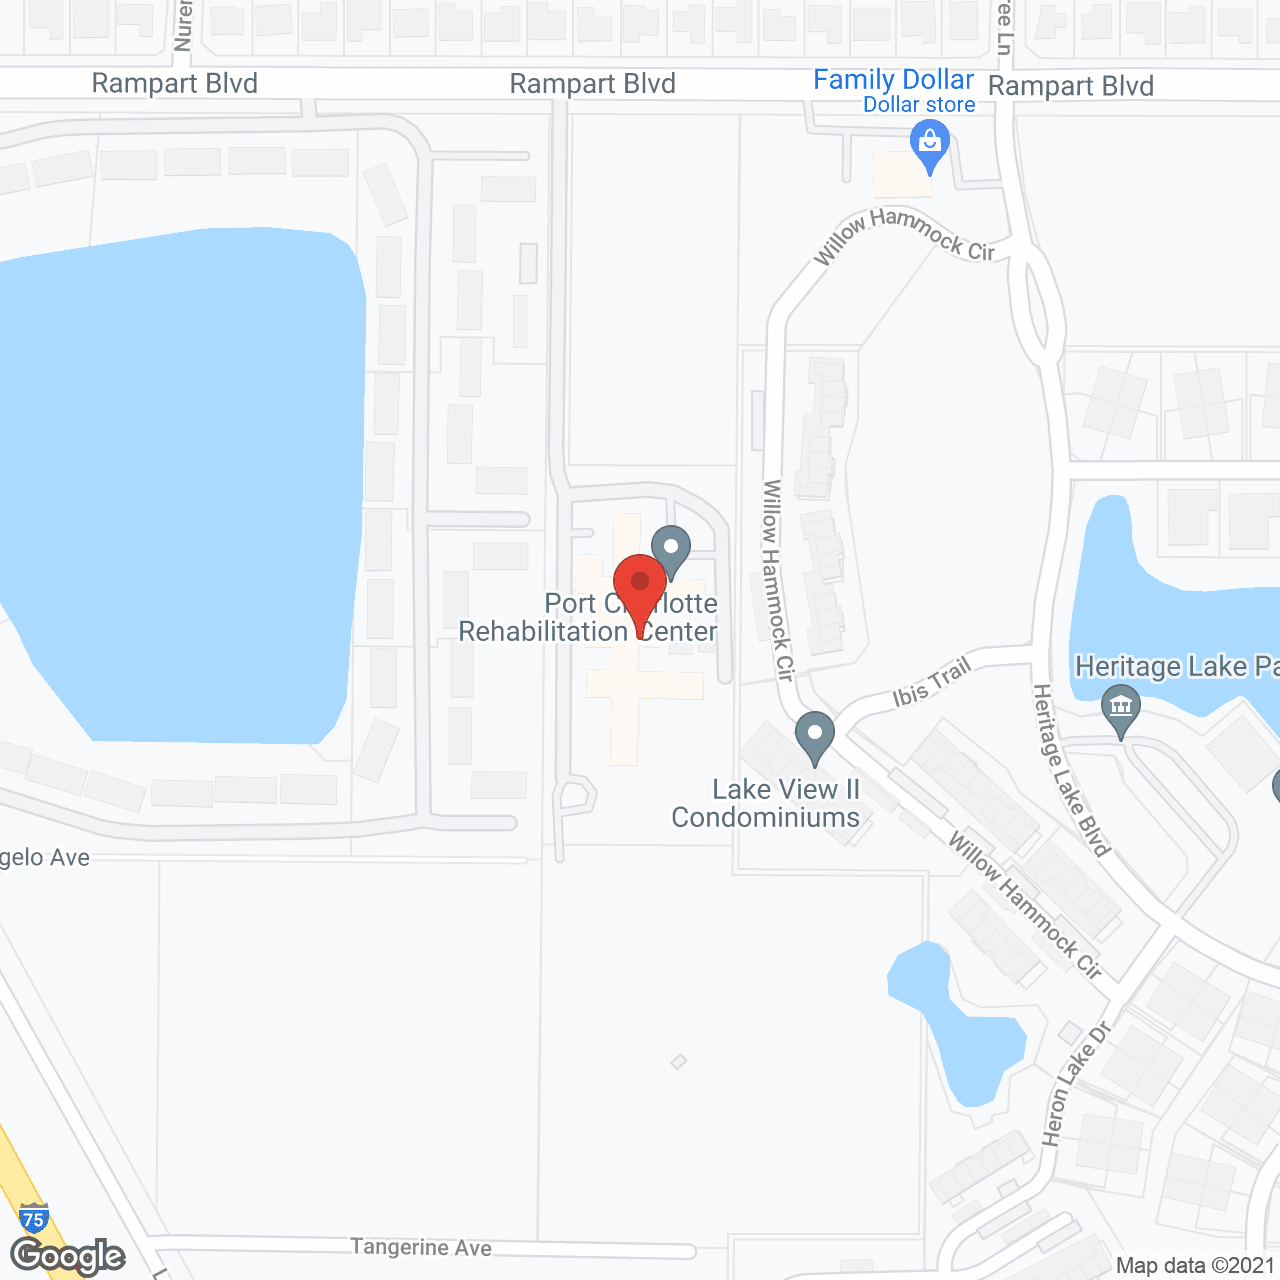 Port Charlotte Rehabilitation Center in google map